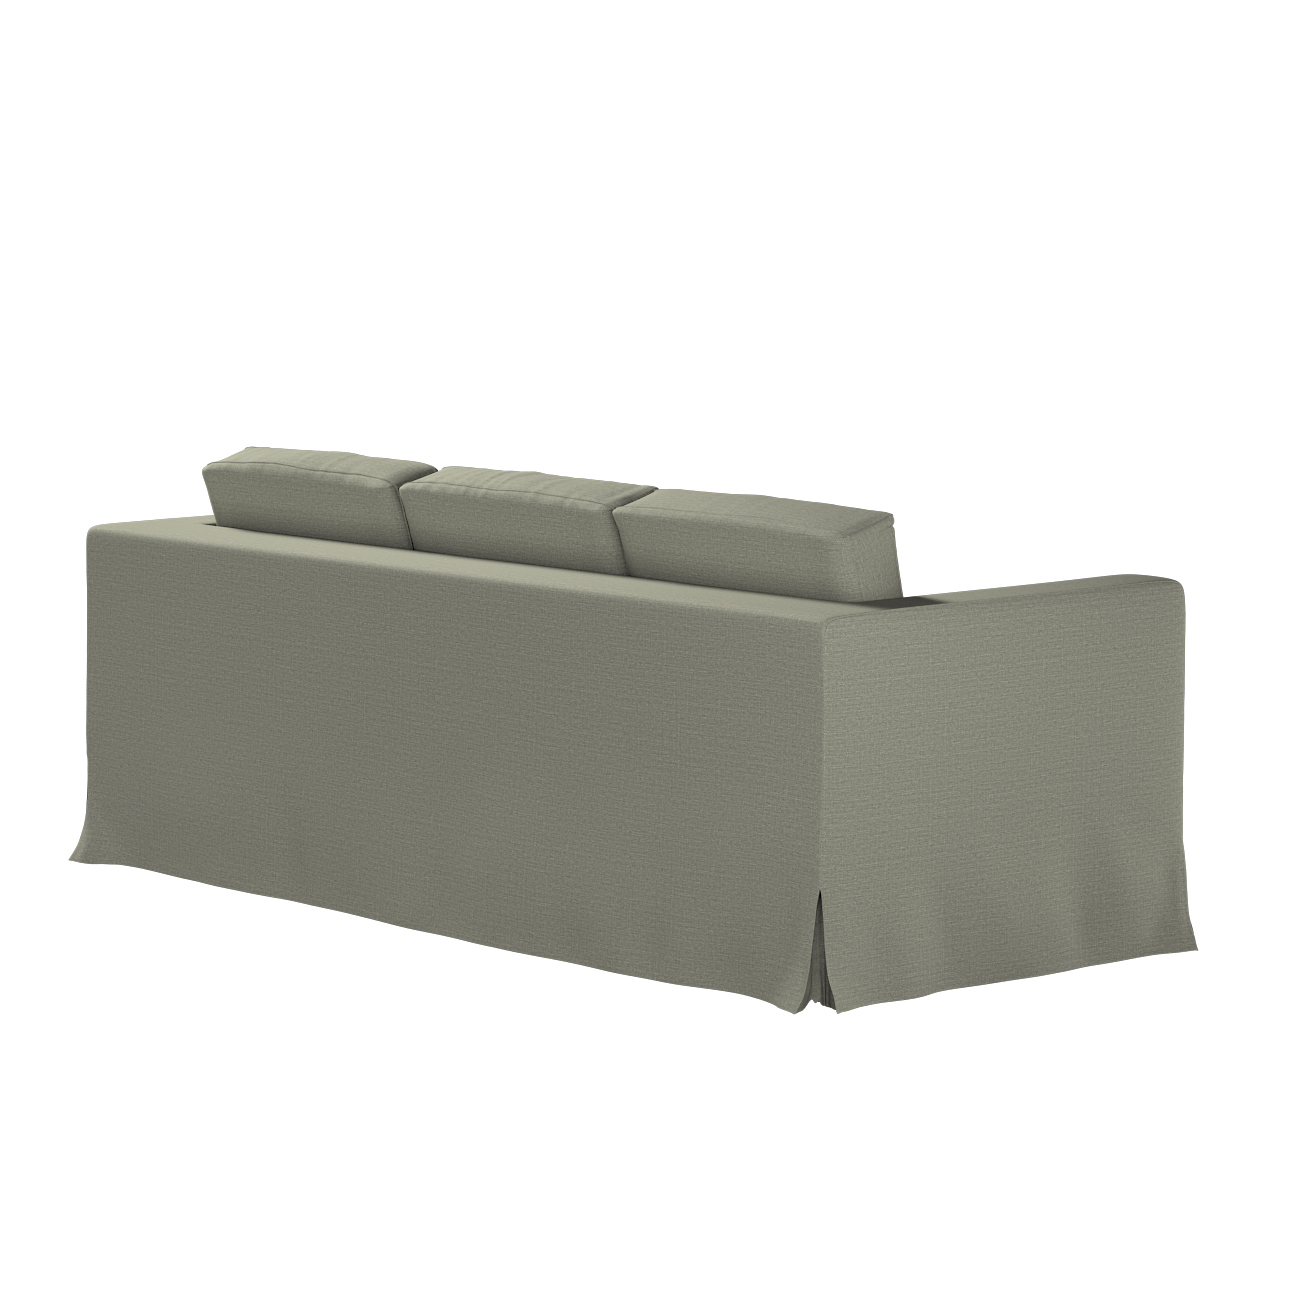 Bezug für Karlanda 3-Sitzer Sofa nicht ausklappbar, lang, grau-beige, Bezug günstig online kaufen